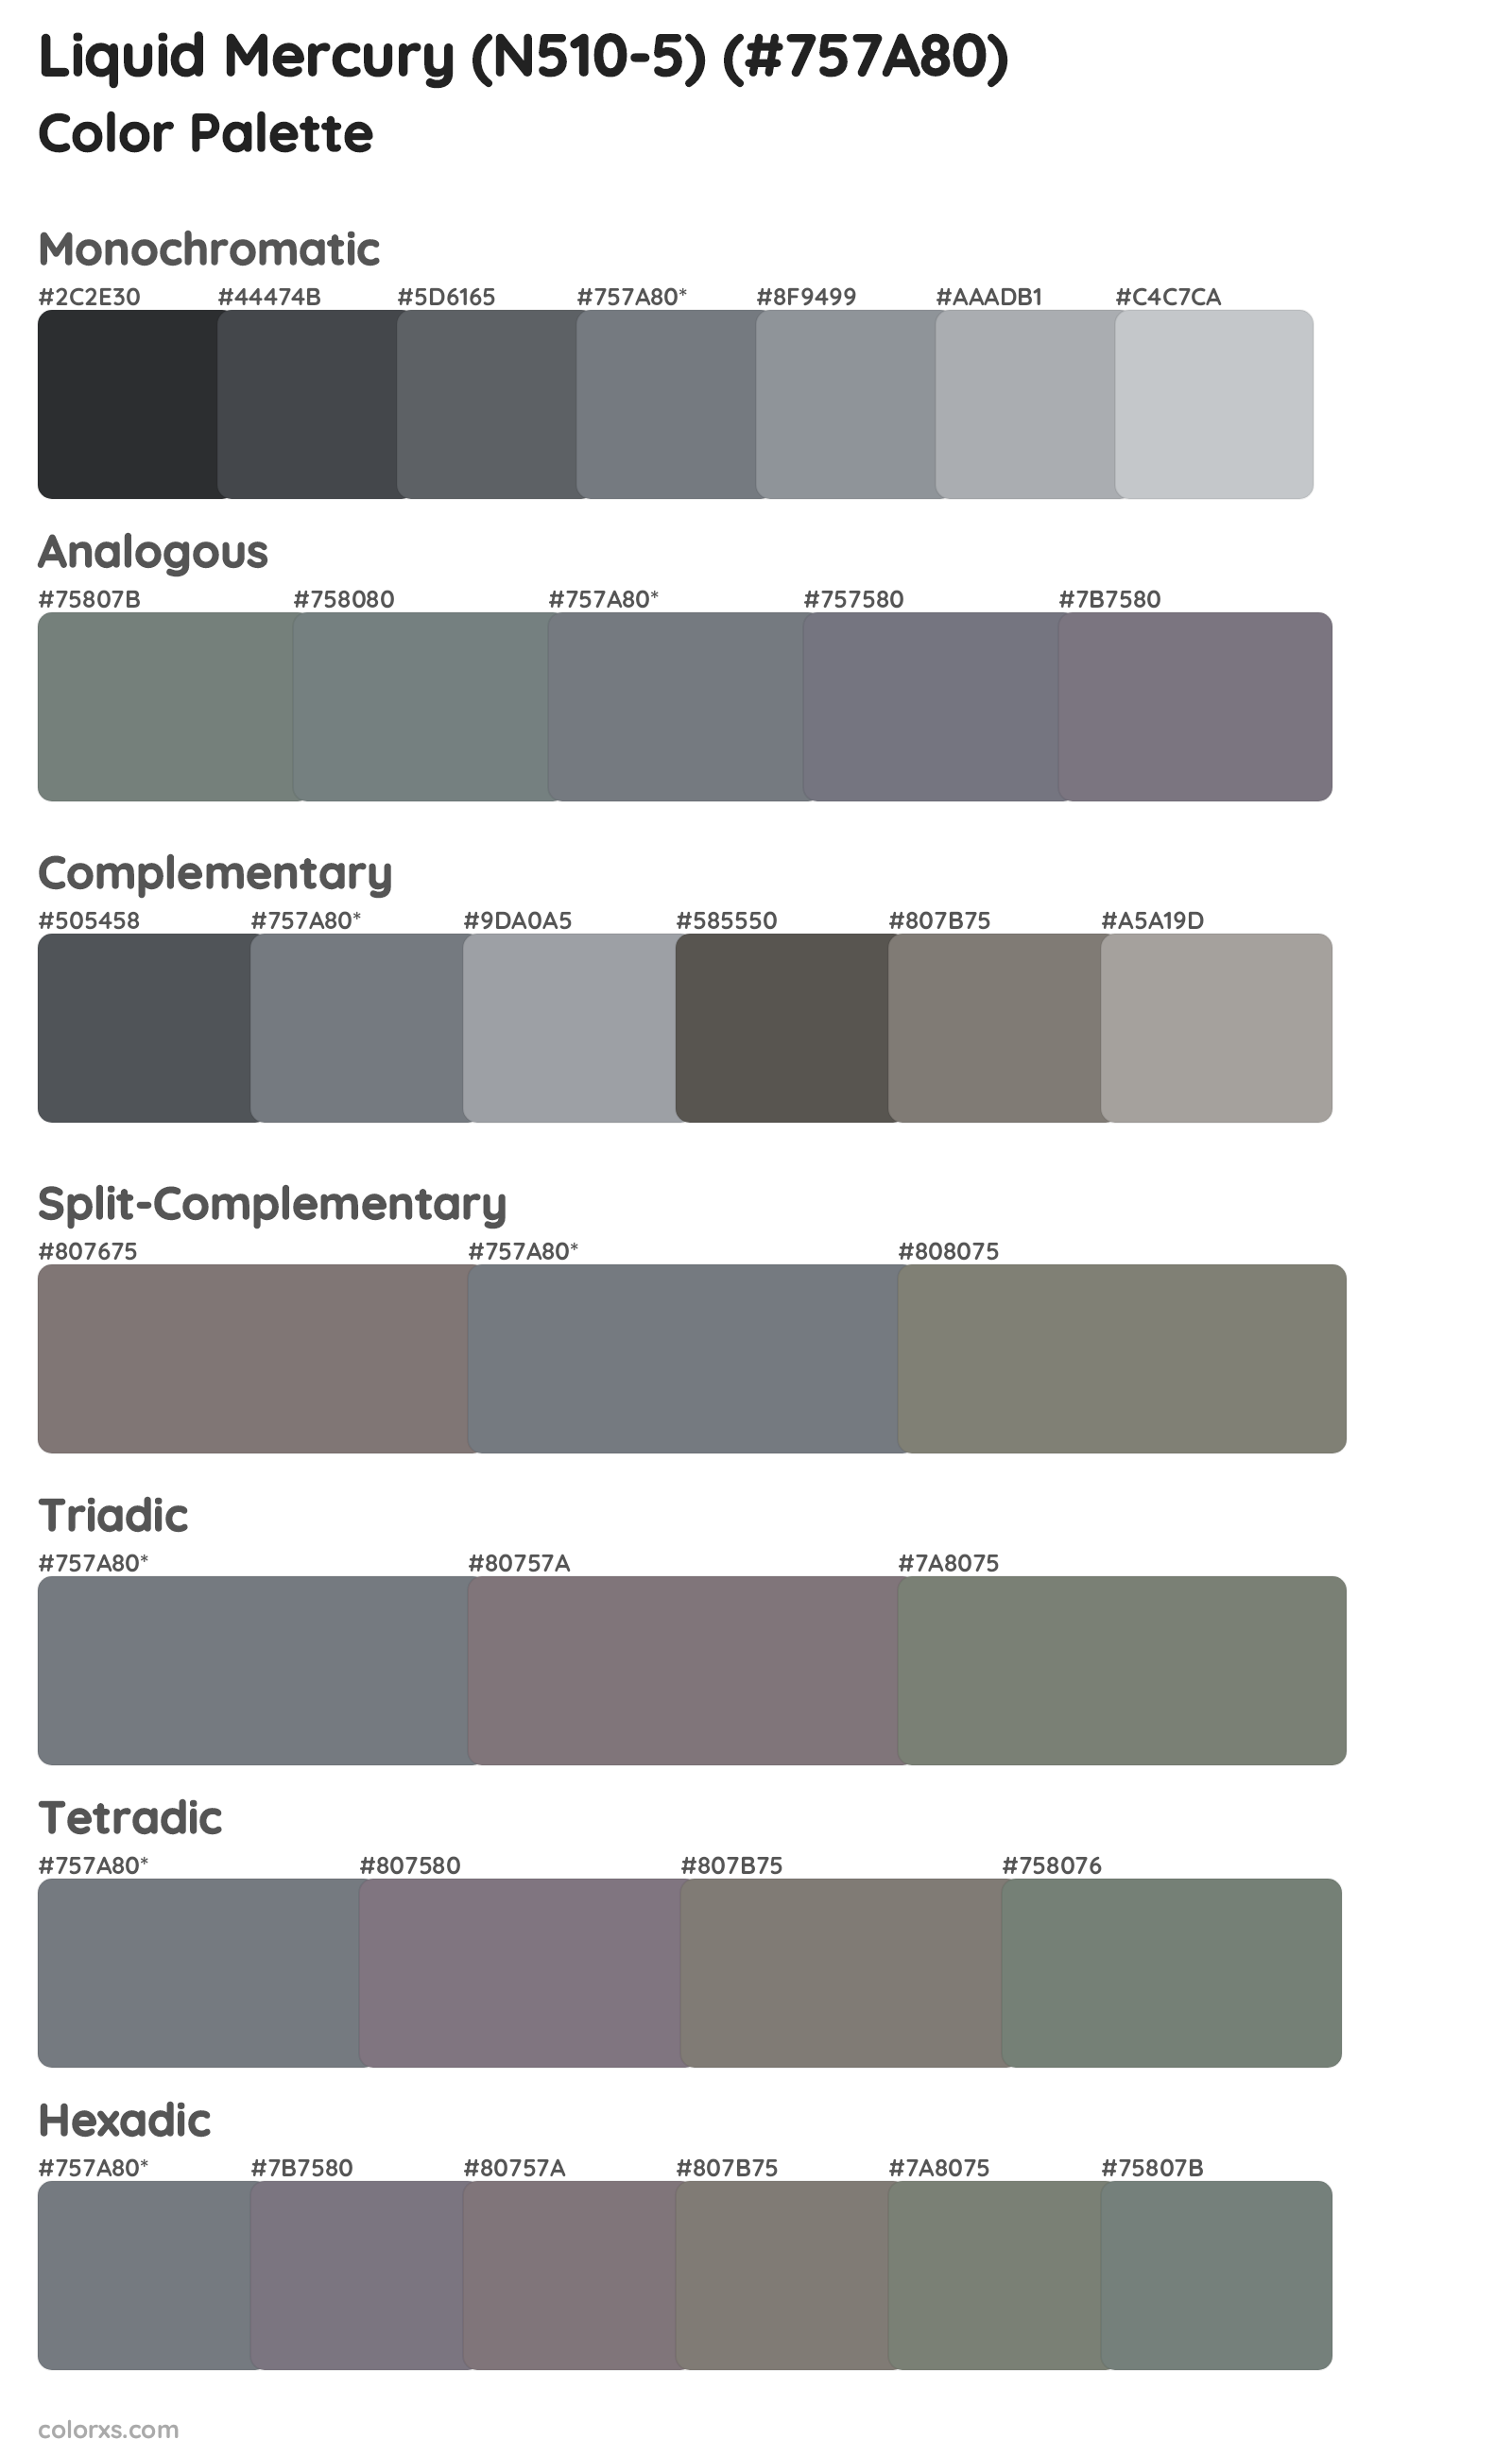 Liquid Mercury (N510-5) Color Scheme Palettes